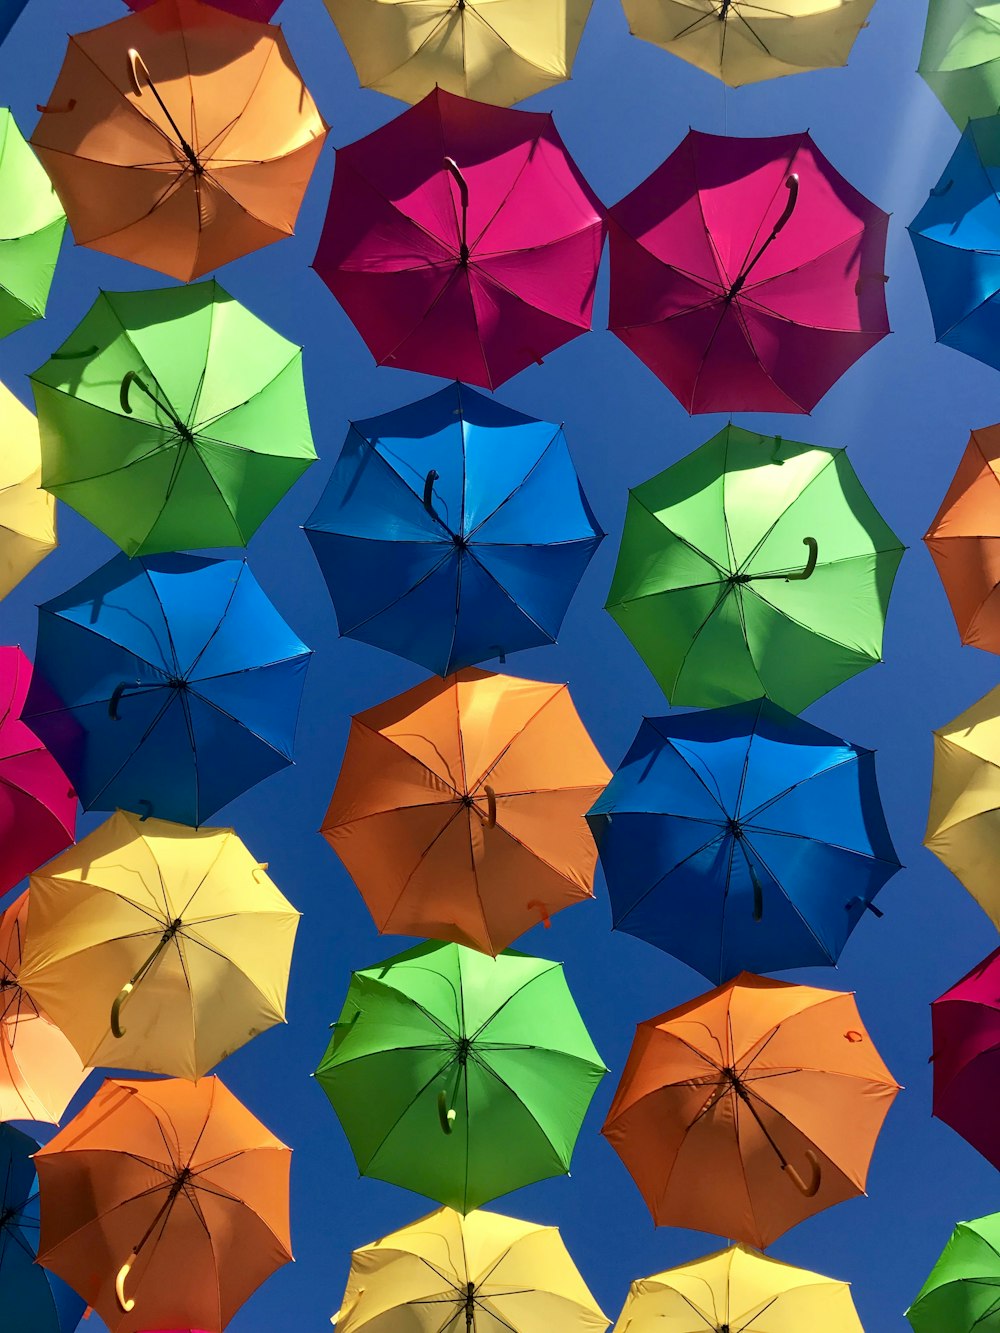 Paraguas de colores variados